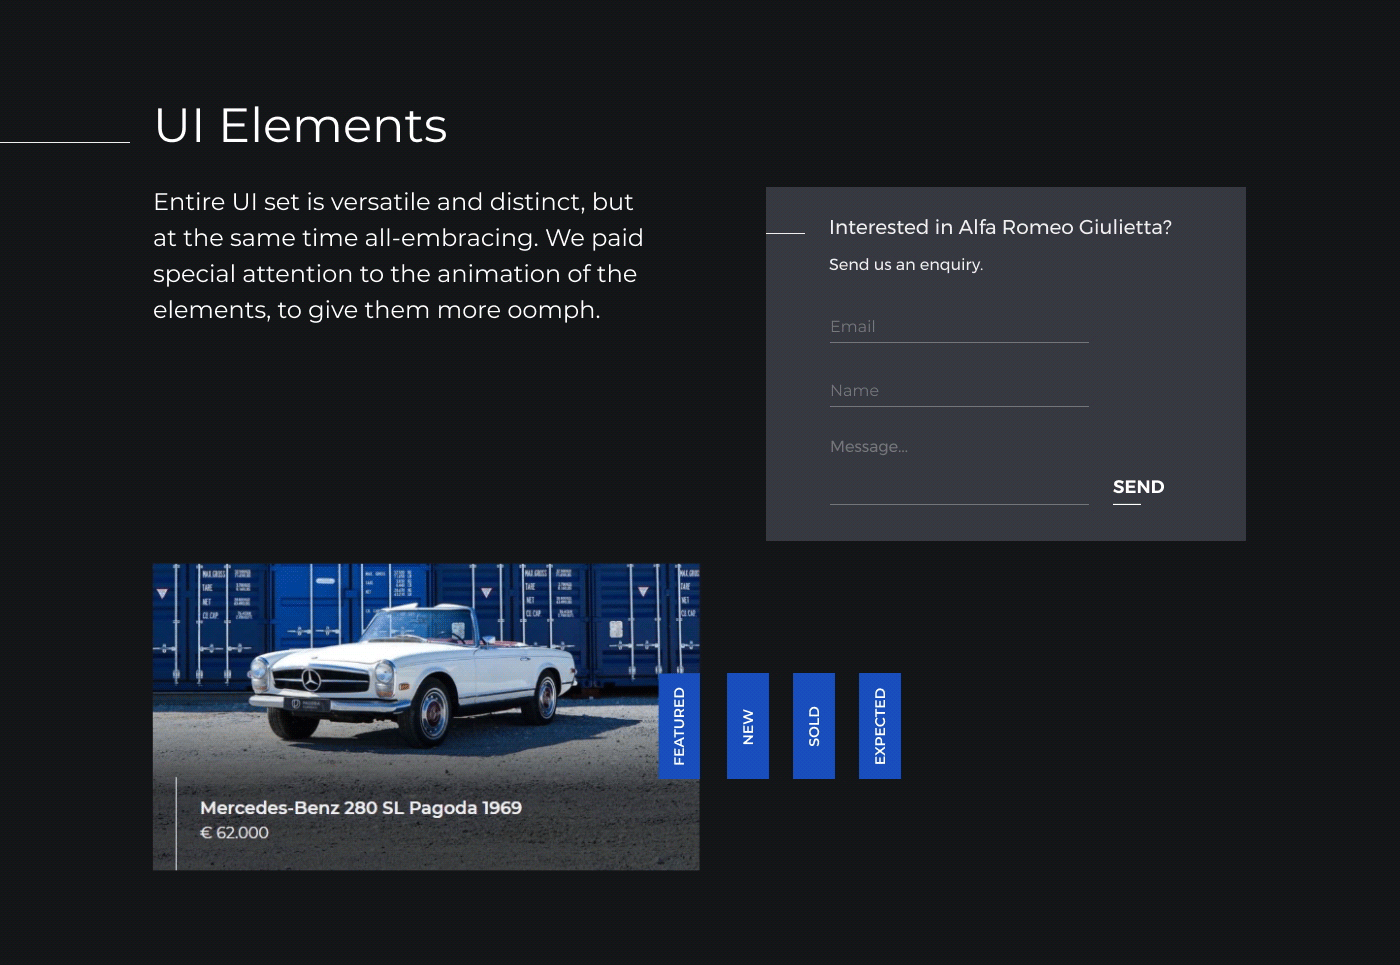 Web Design  branding  UI/UX Ecommerce shop automotive   Classic Cars video